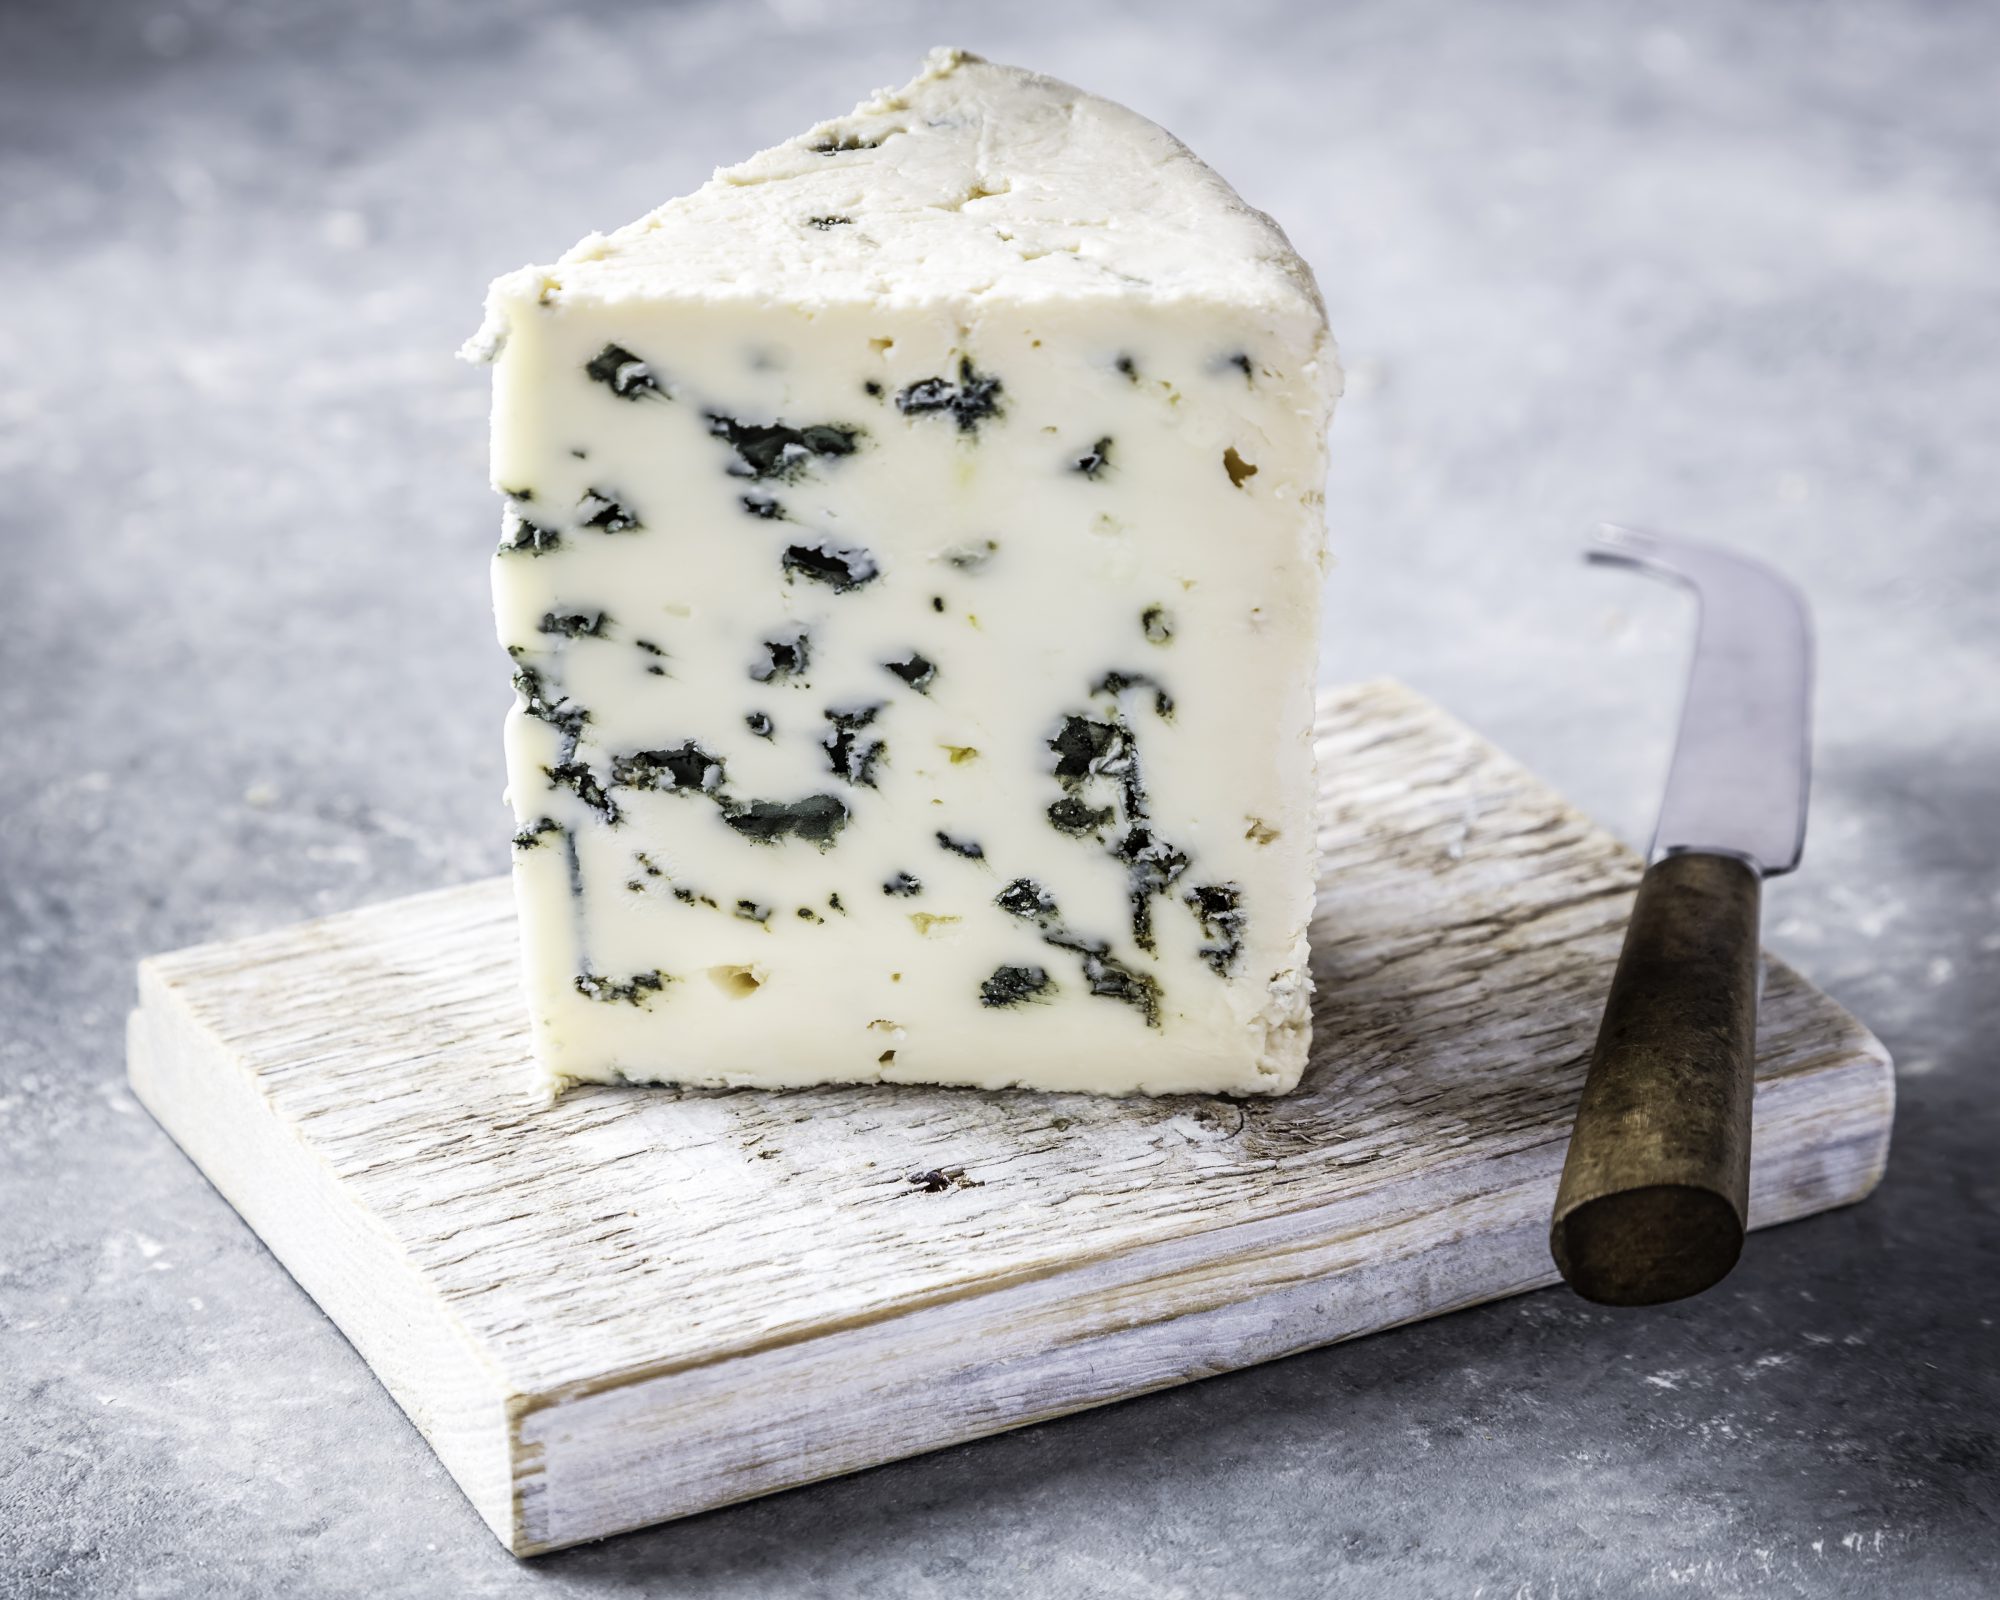 Ροκφόρ: Το τυρί με τις πολλές ιδιότητες